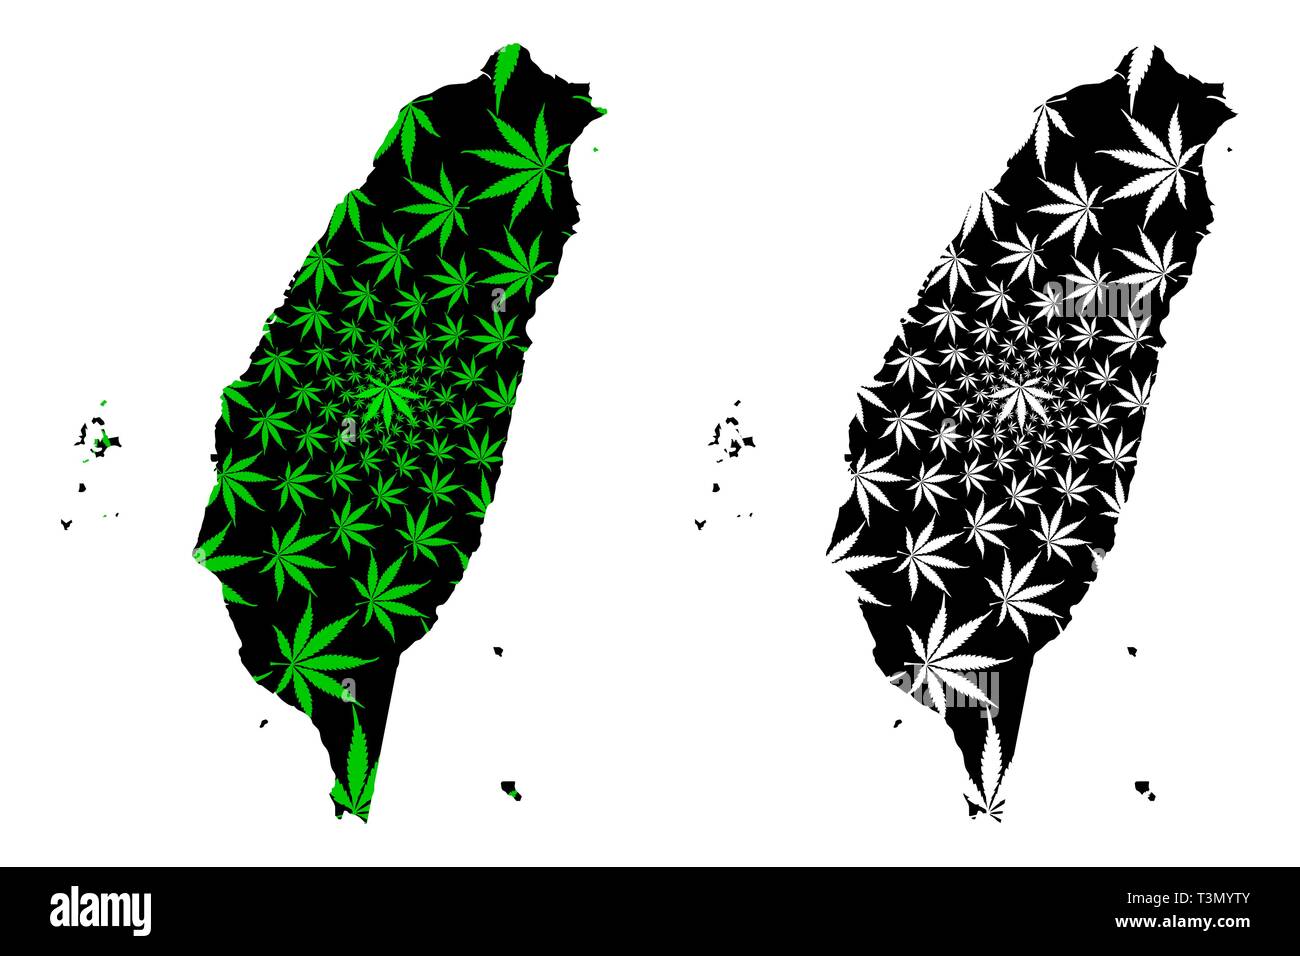 Taiwan - carte feuille de cannabis est vert et noir, République de Chine (ROC) carte de marijuana, THC) feuillage, Illustration de Vecteur